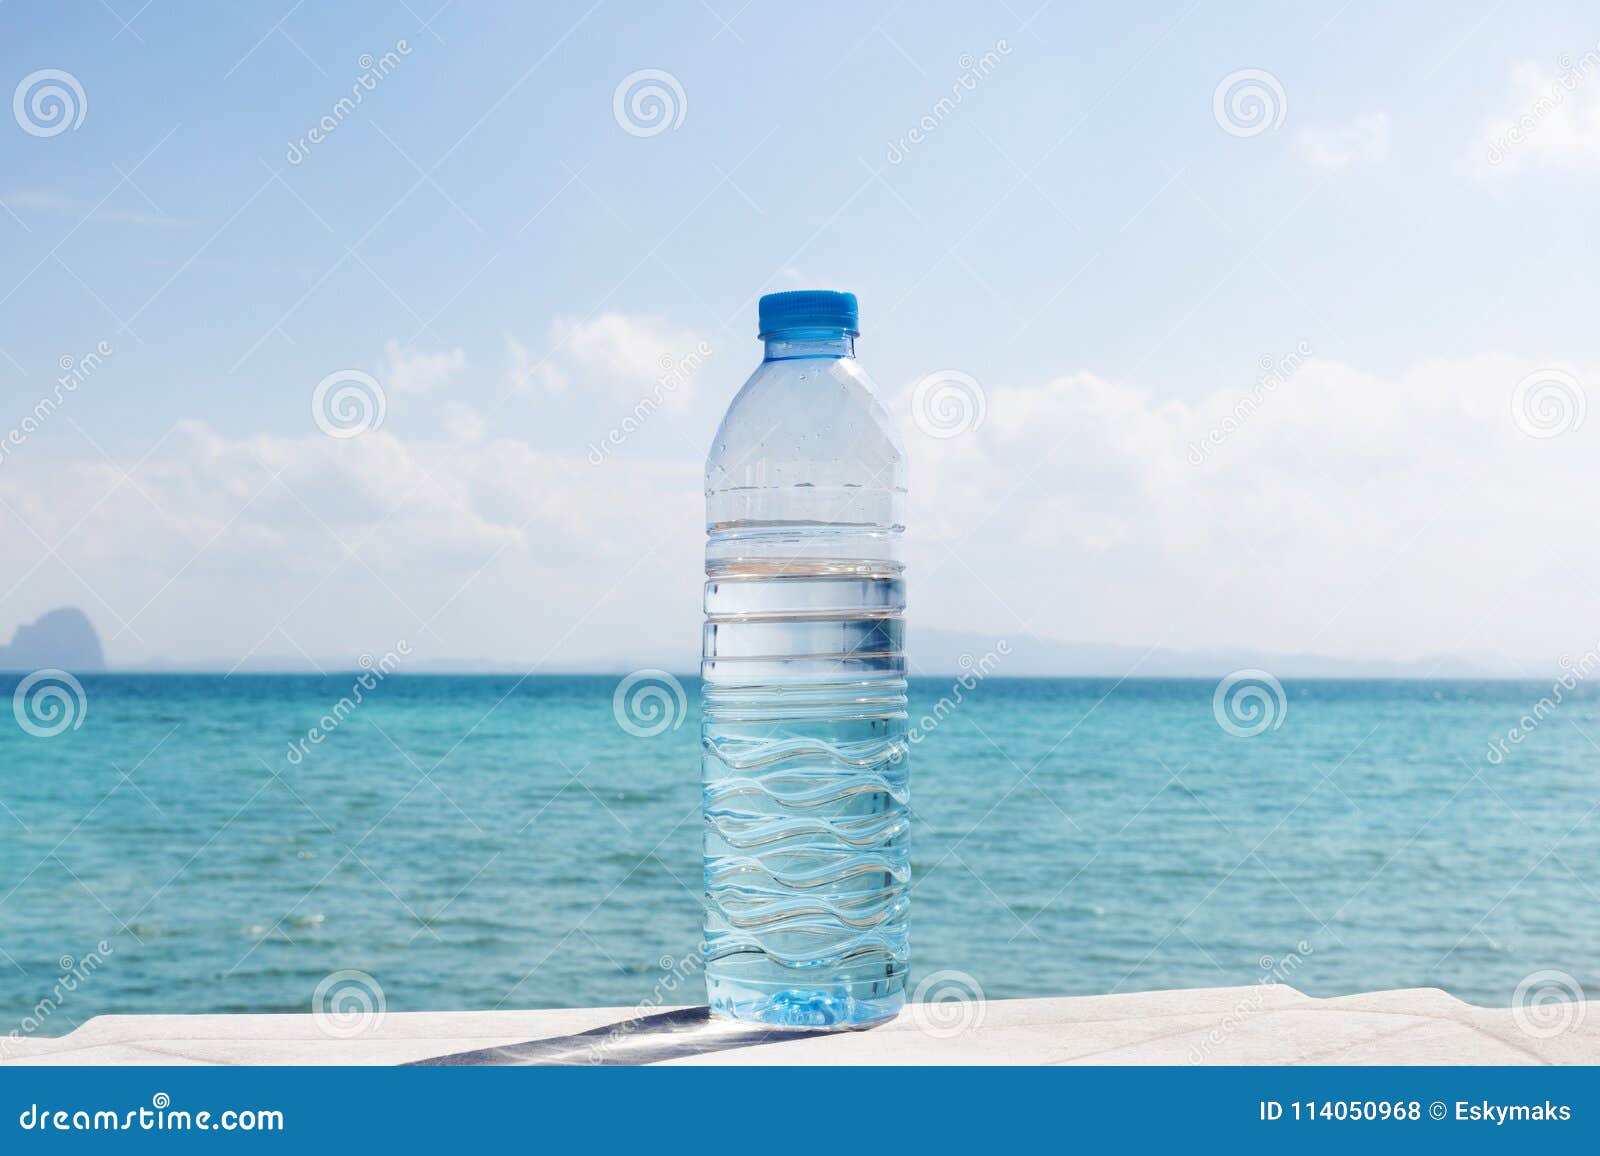 Зачем вода в бутылке. Бутылка воды на пляже. Бутылка воды на солнце. Природа вода бутыль. Узкая бутылка для воды.